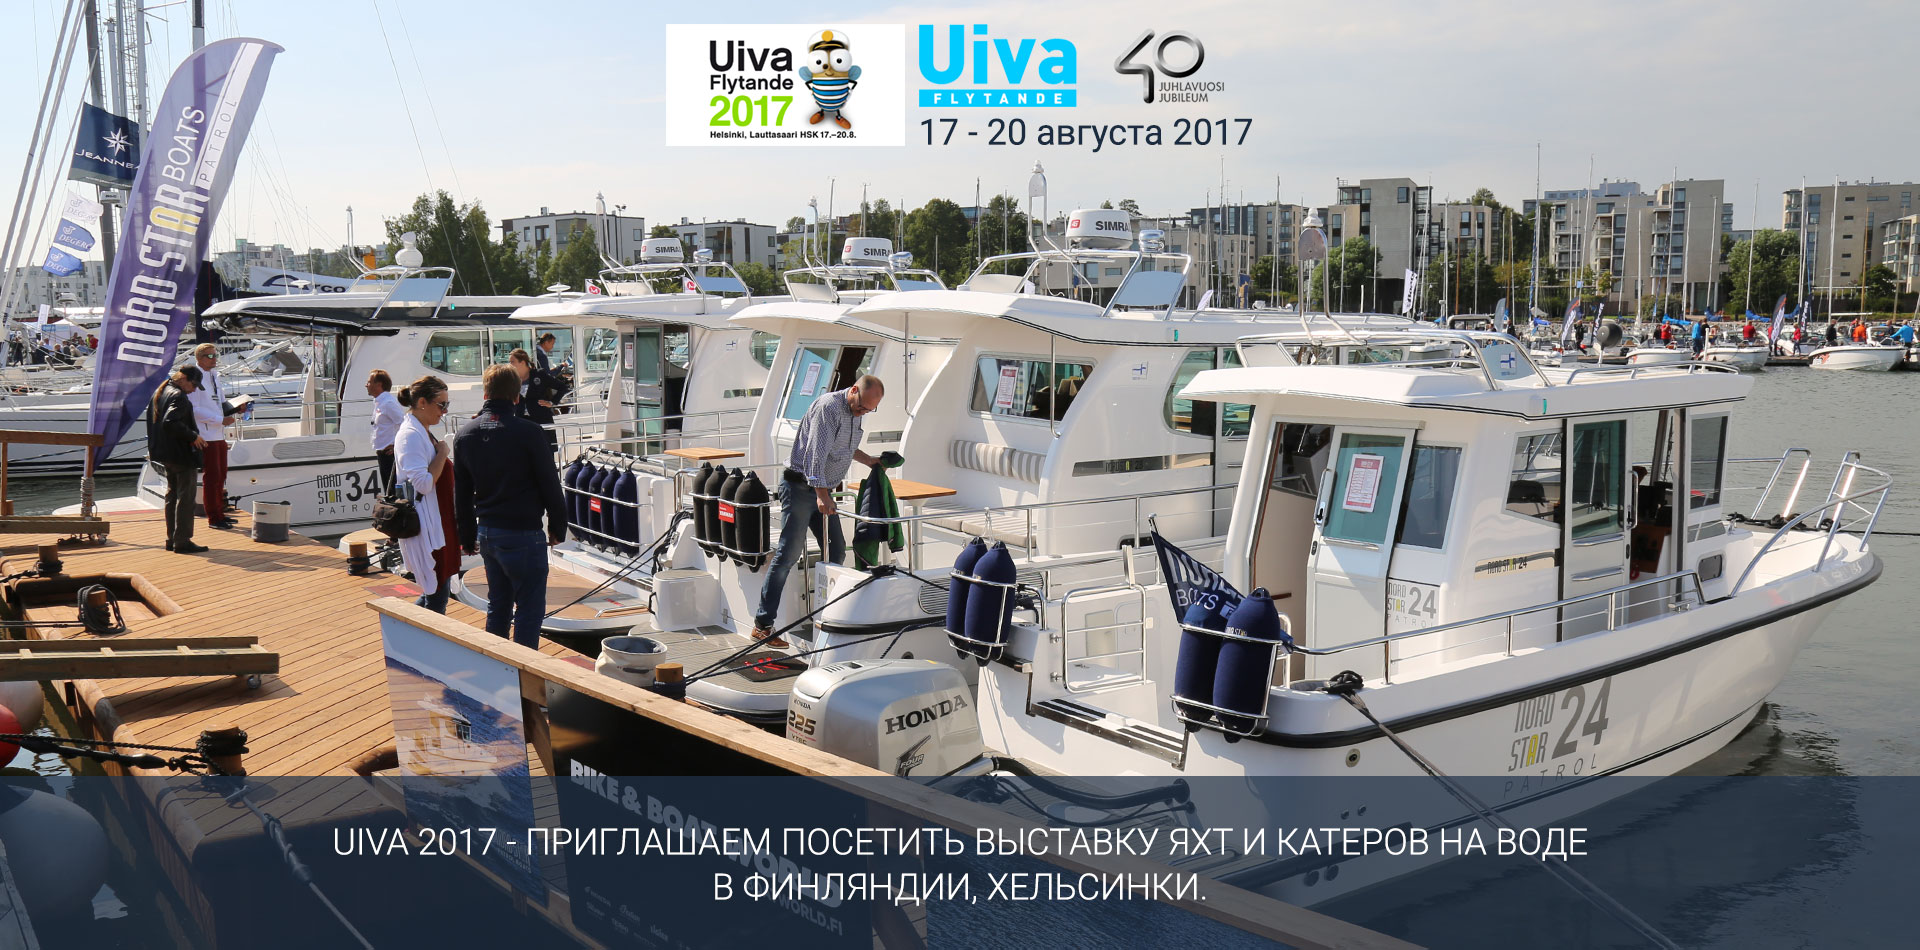 UIVA 2017 - Приглашаем посетить выставку яхт и катеров на воде в Финляндии, Хельсинки.